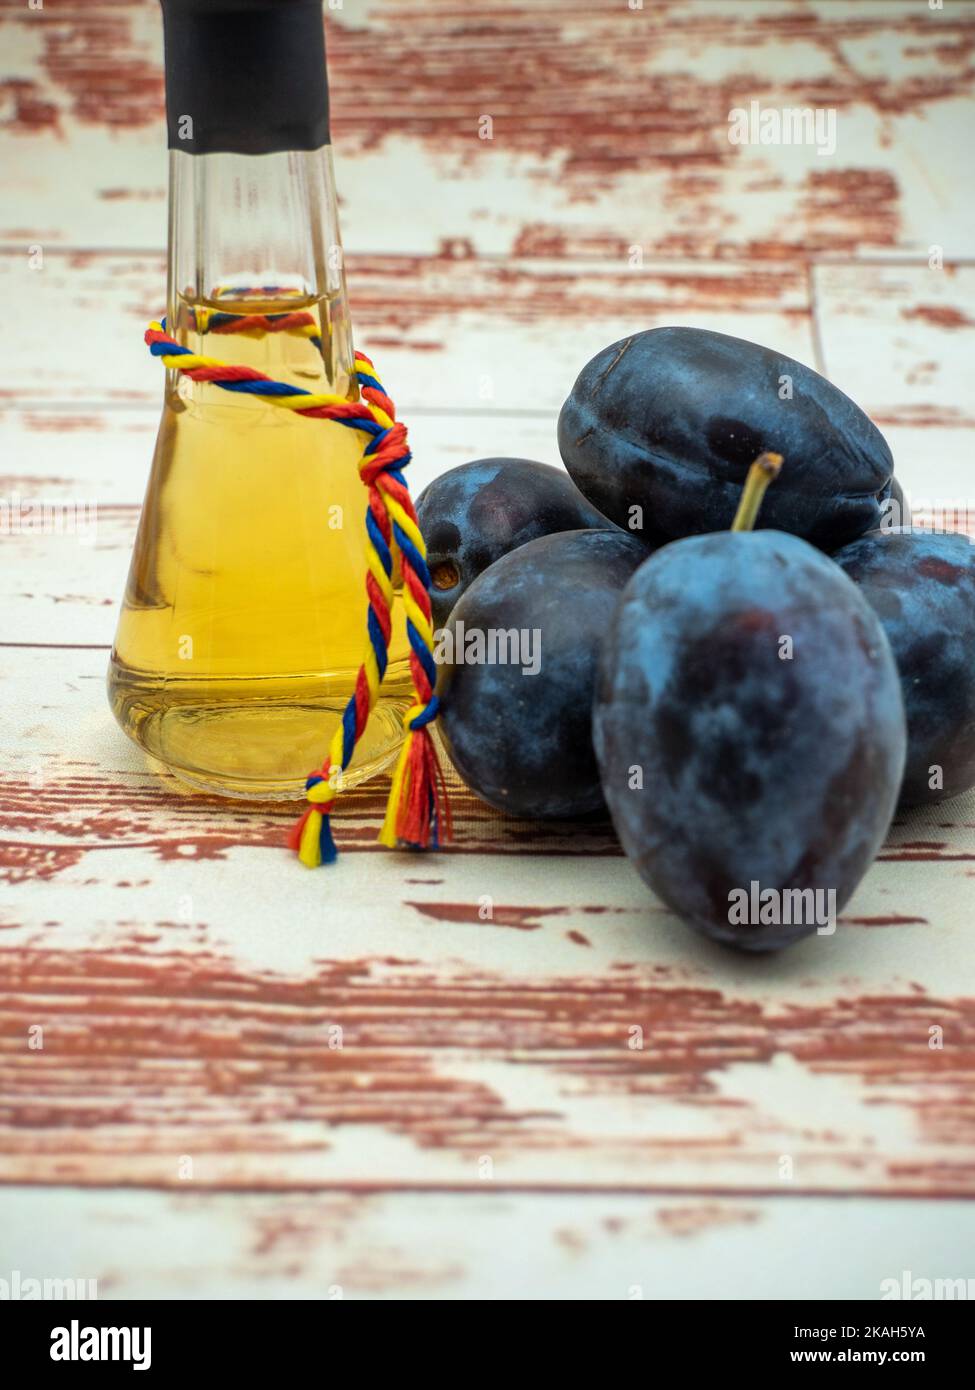 brandy roumain de prune connu sous le nom de tuica ou tzuica dans un verre connu sous le nom de tzoi ou toi et tas de prunes mûres Banque D'Images